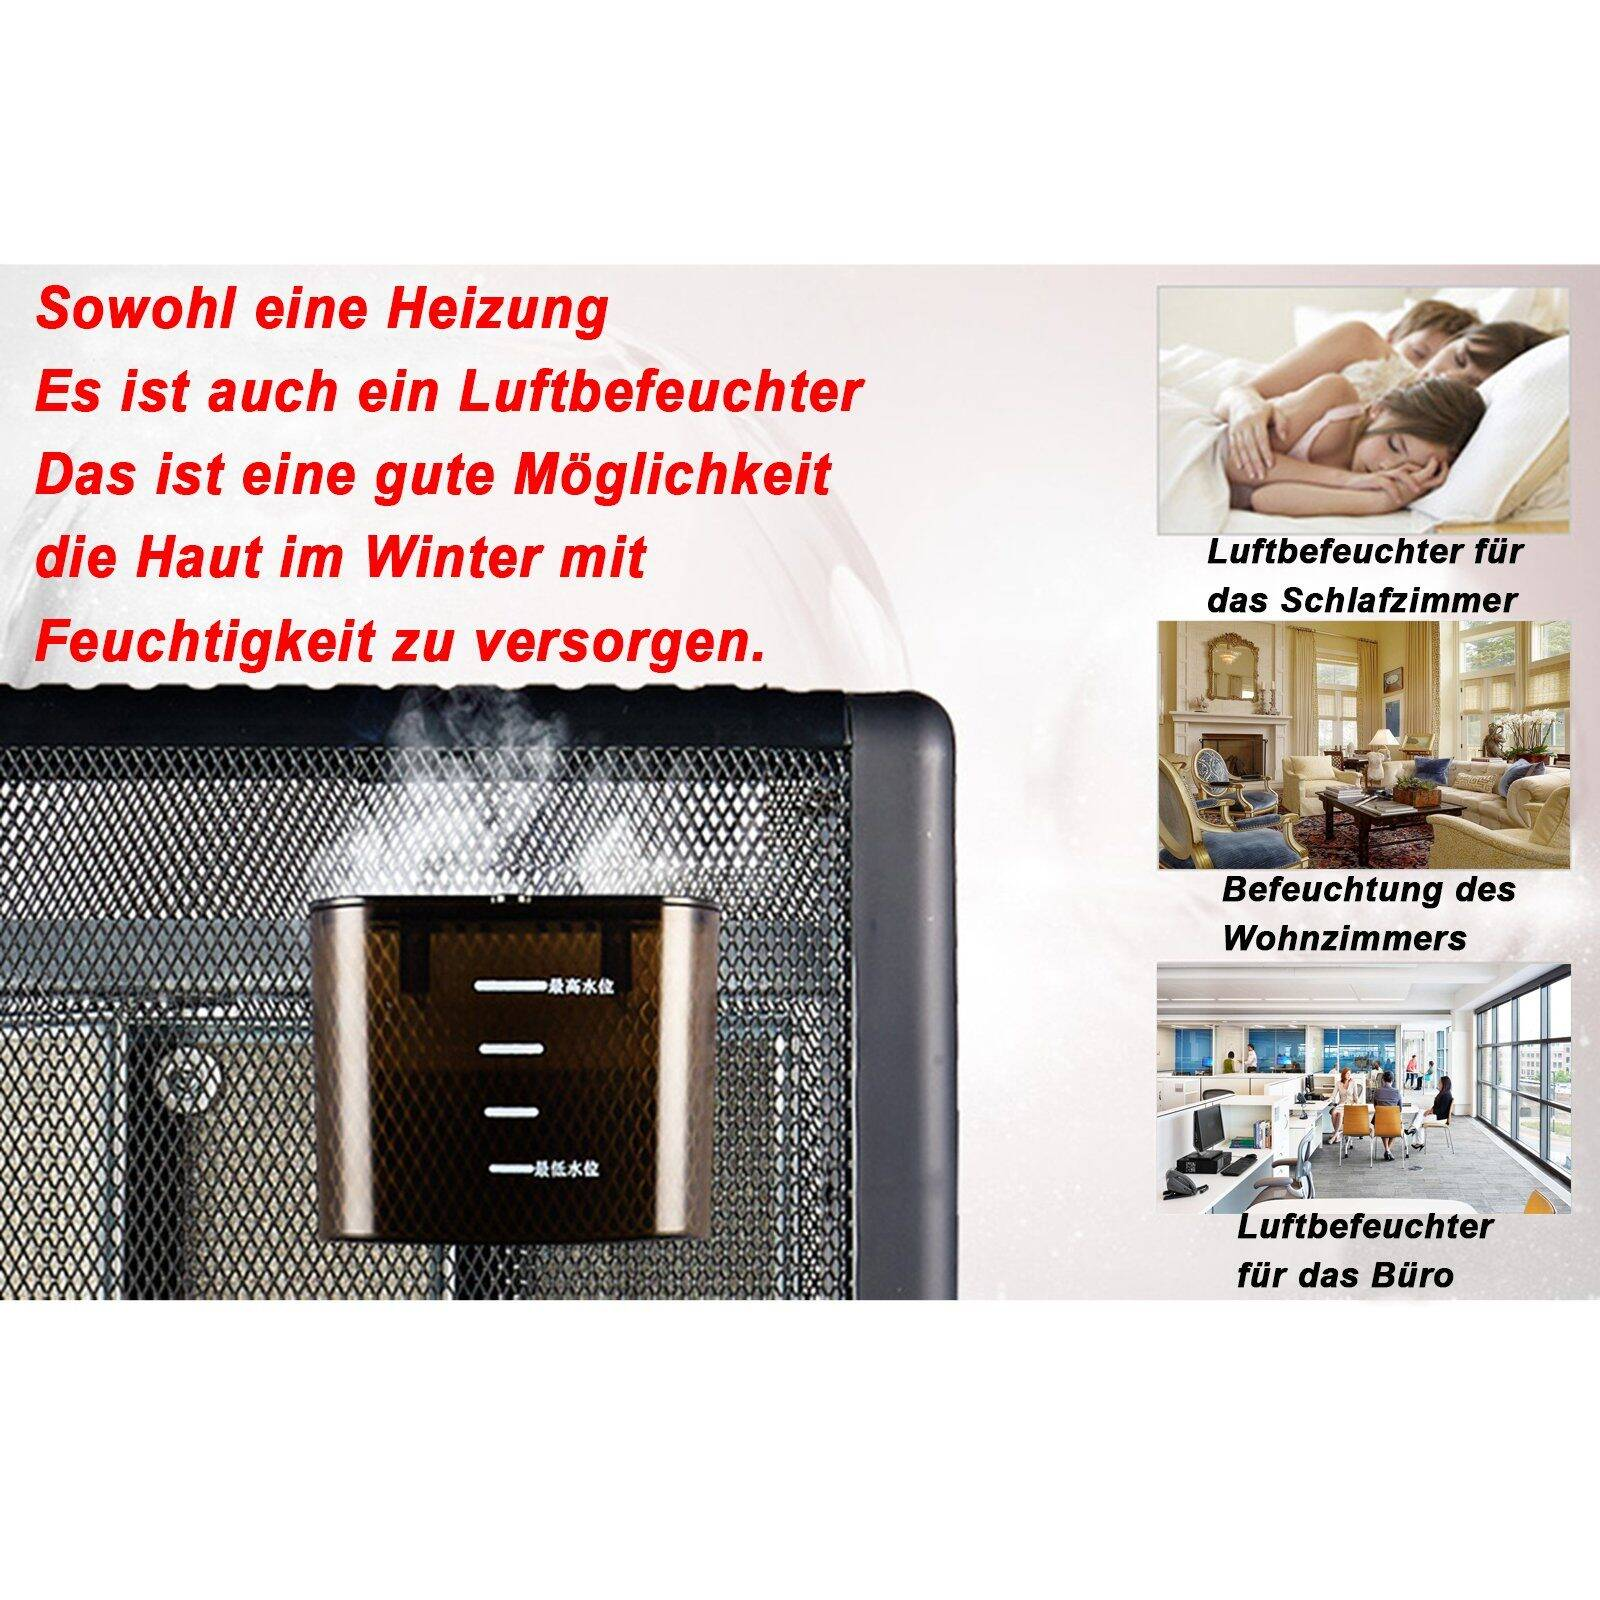 FINE energieeffizient Heizgerät Thermostat,Sicher LIFE und Watt) Heizung (2500 PRO Heizstufen,2500W 3 einstellbarer